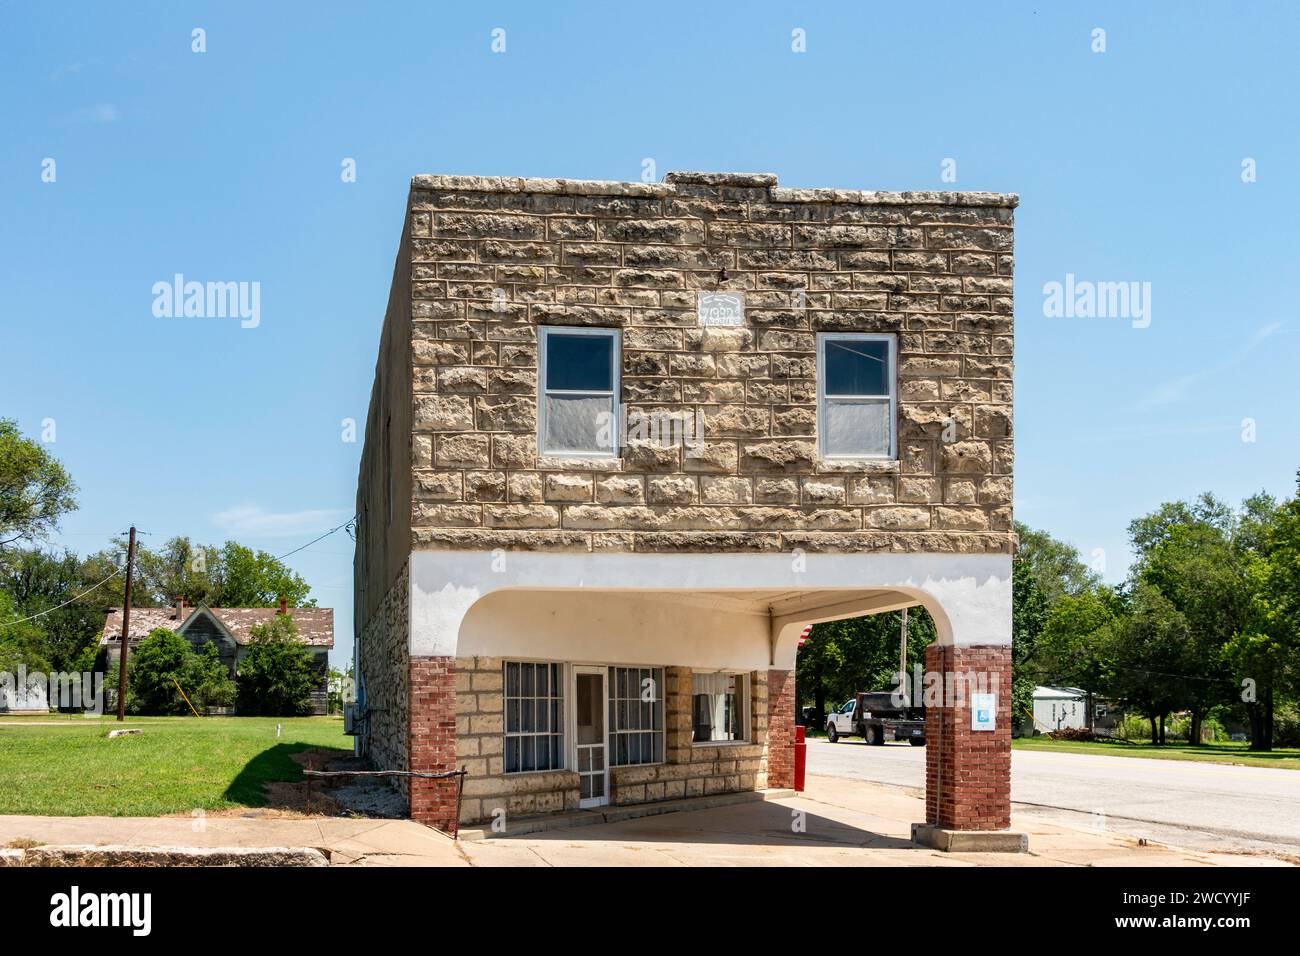 Das Cambridge, Kansas I00F-Gebäude und cattlemans' Cafe, rechts hinten, aus Sandstein gebaut, ein altes historisches Gebäude im Westen von Kansas, USA. Stockfoto